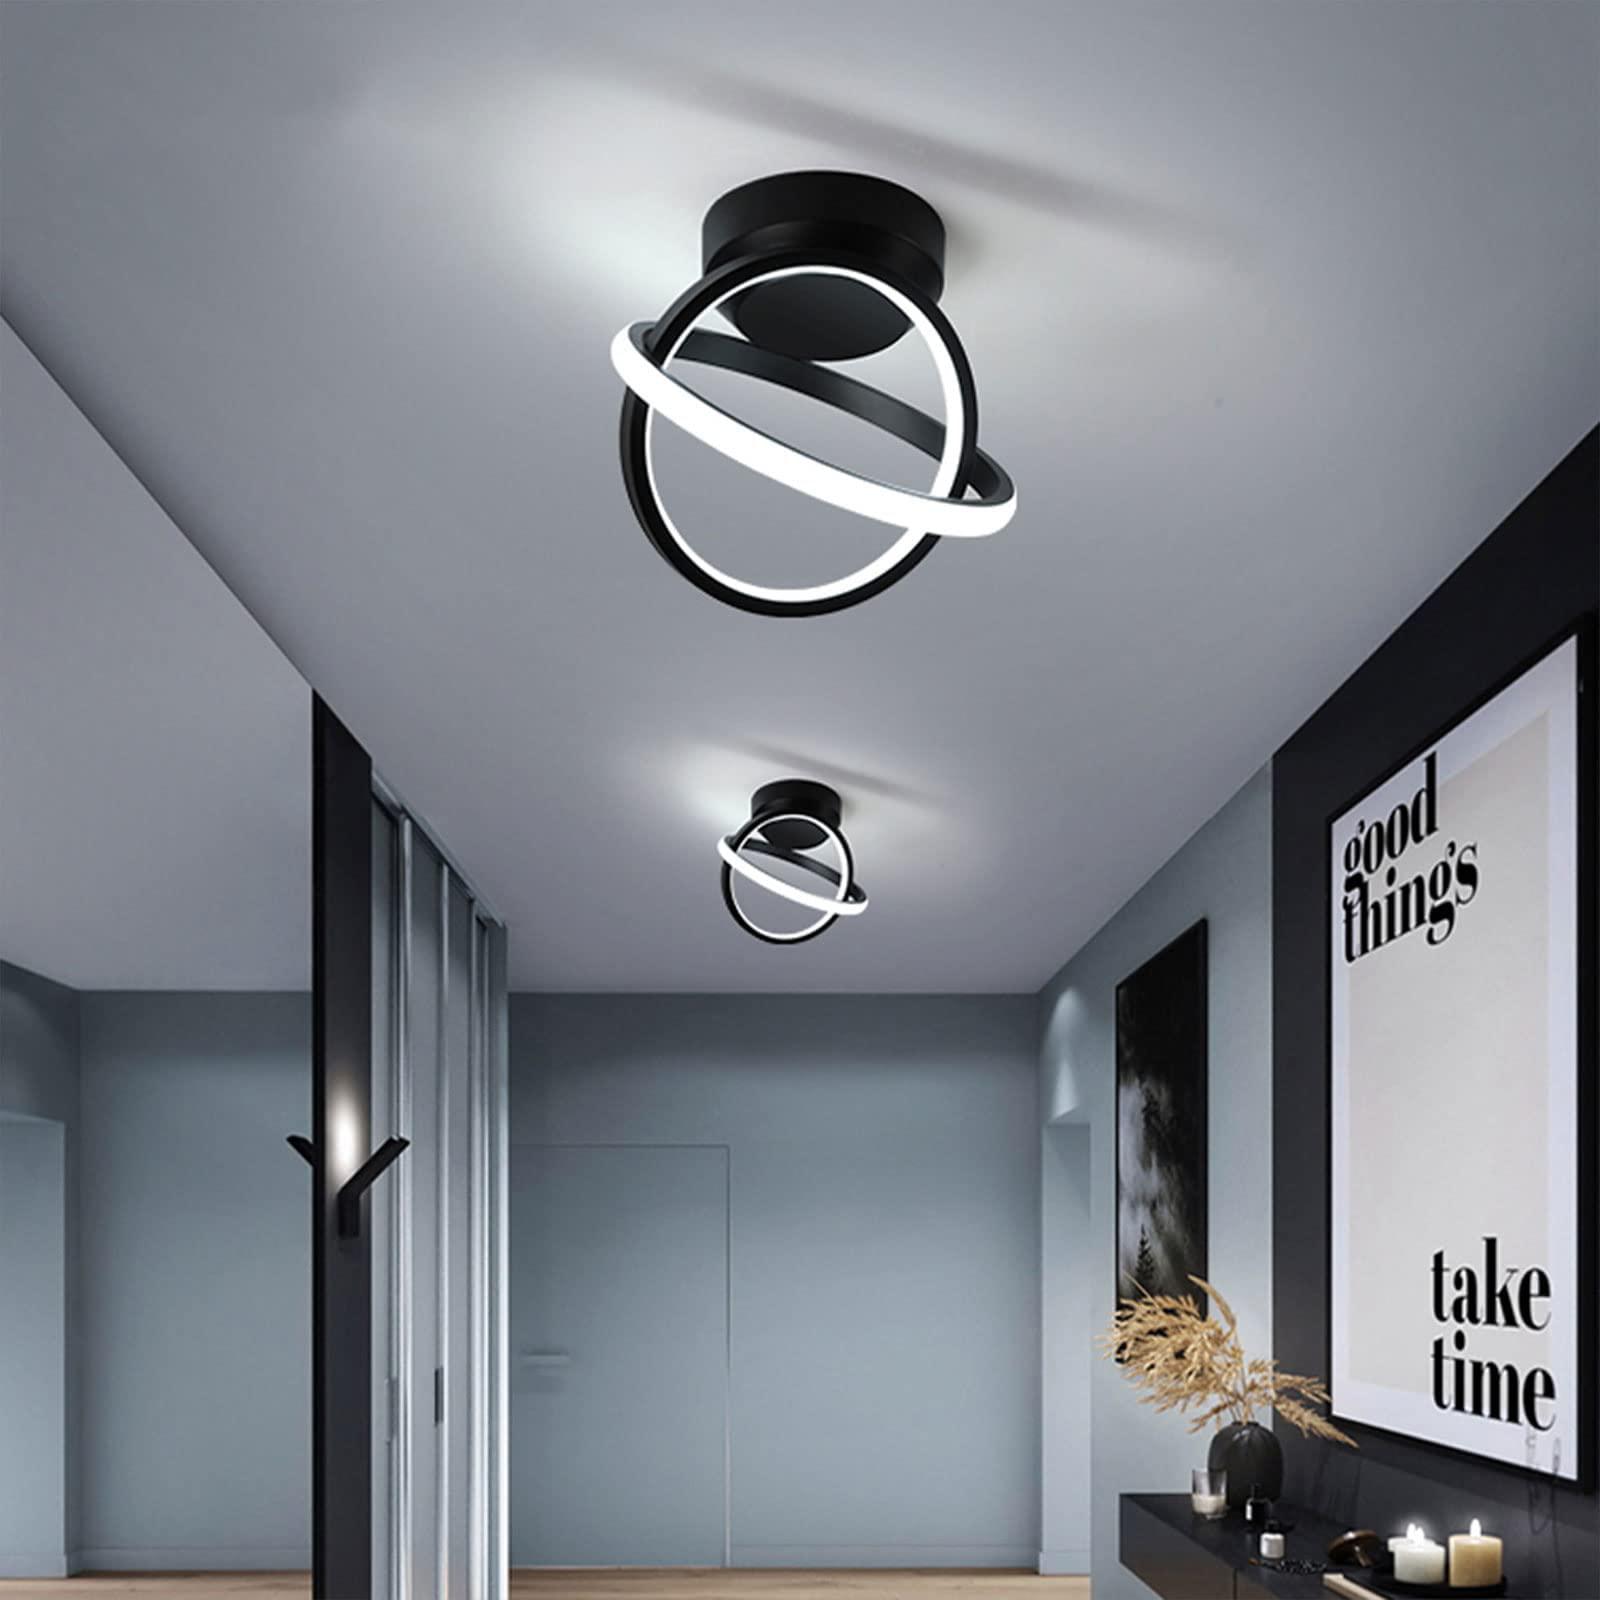 cANEOE black led ceiling light, 6000k modern led ceiling lighting fixtures, metal creative design ceiling lamp for living room bedro